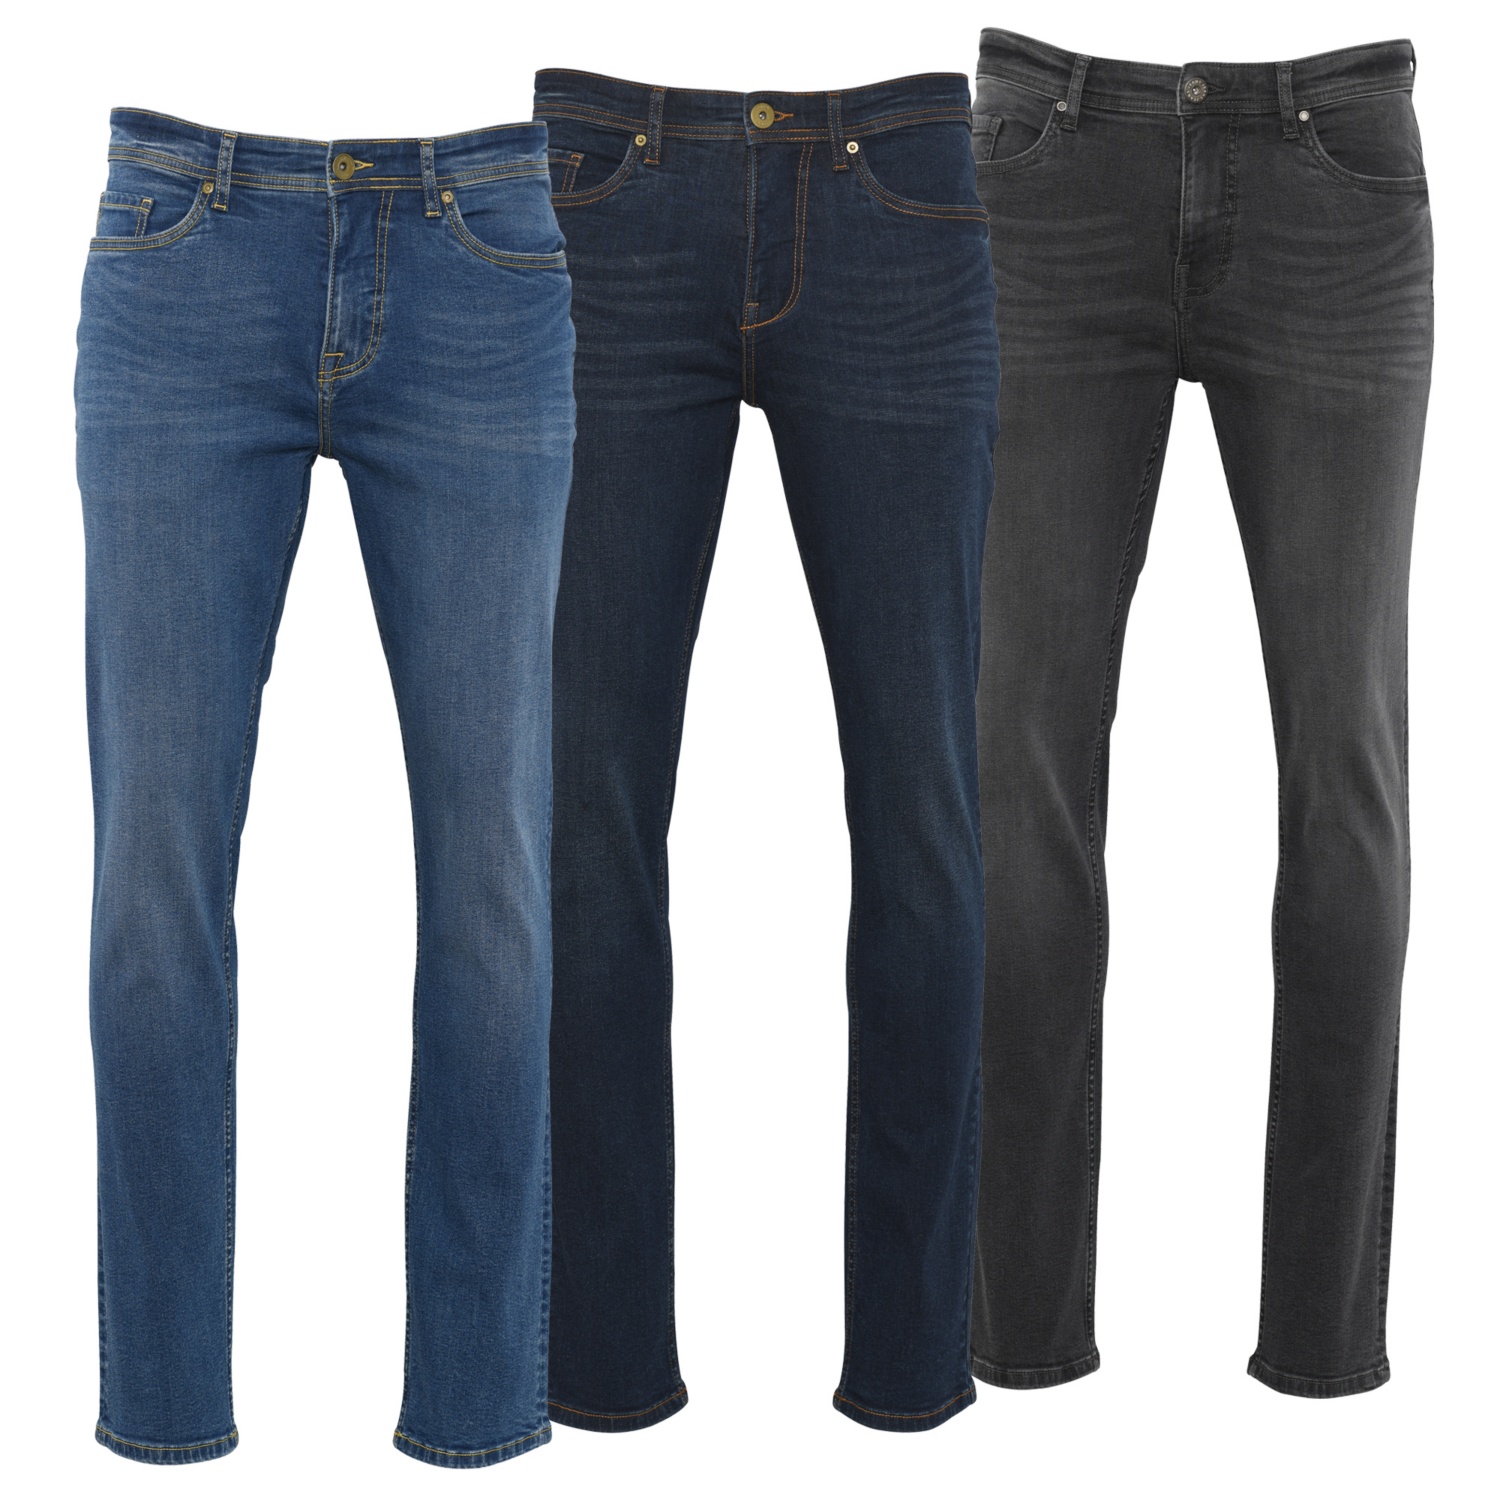 Die besten Auswahlmöglichkeiten - Finden Sie die Watson jeans entsprechend Ihrer Wünsche